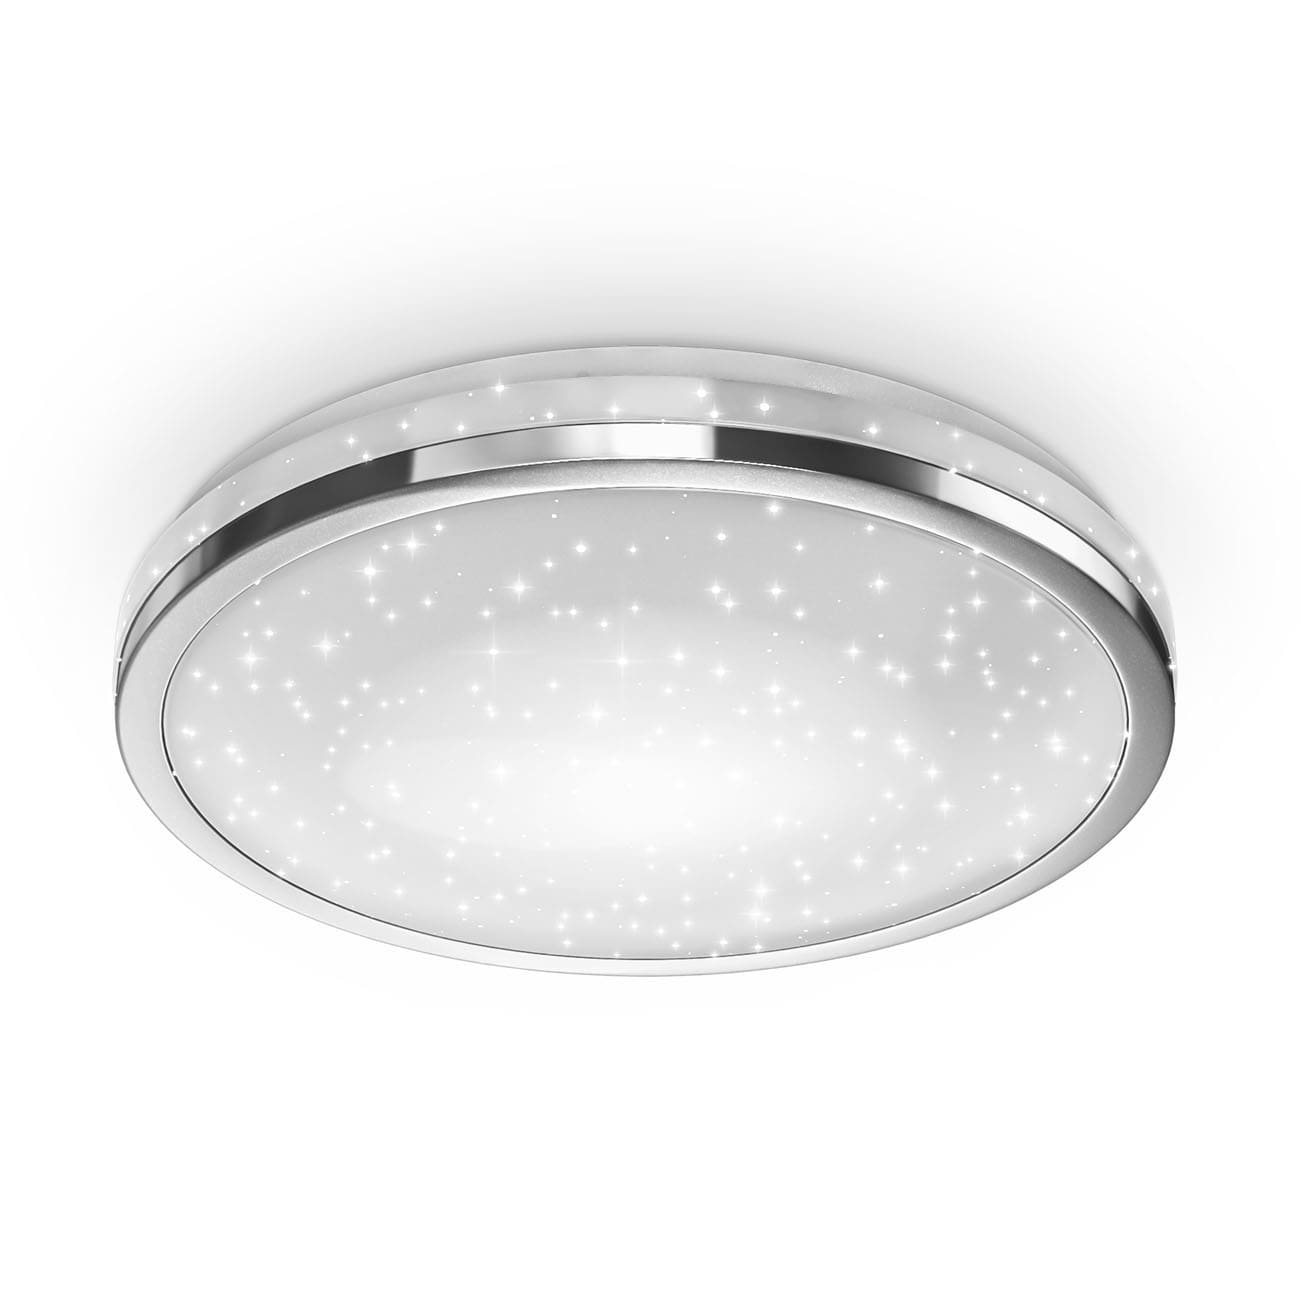 LED Deckenlampe mit Sternen-Dekor rund -  Ø33x6cm - Sternenhimmel-Deckenleuchte flach Küche Flur inkl. Leuchtmittel 15W 1500lm 4.000K neutralweißes Licht | chromfarben - 1